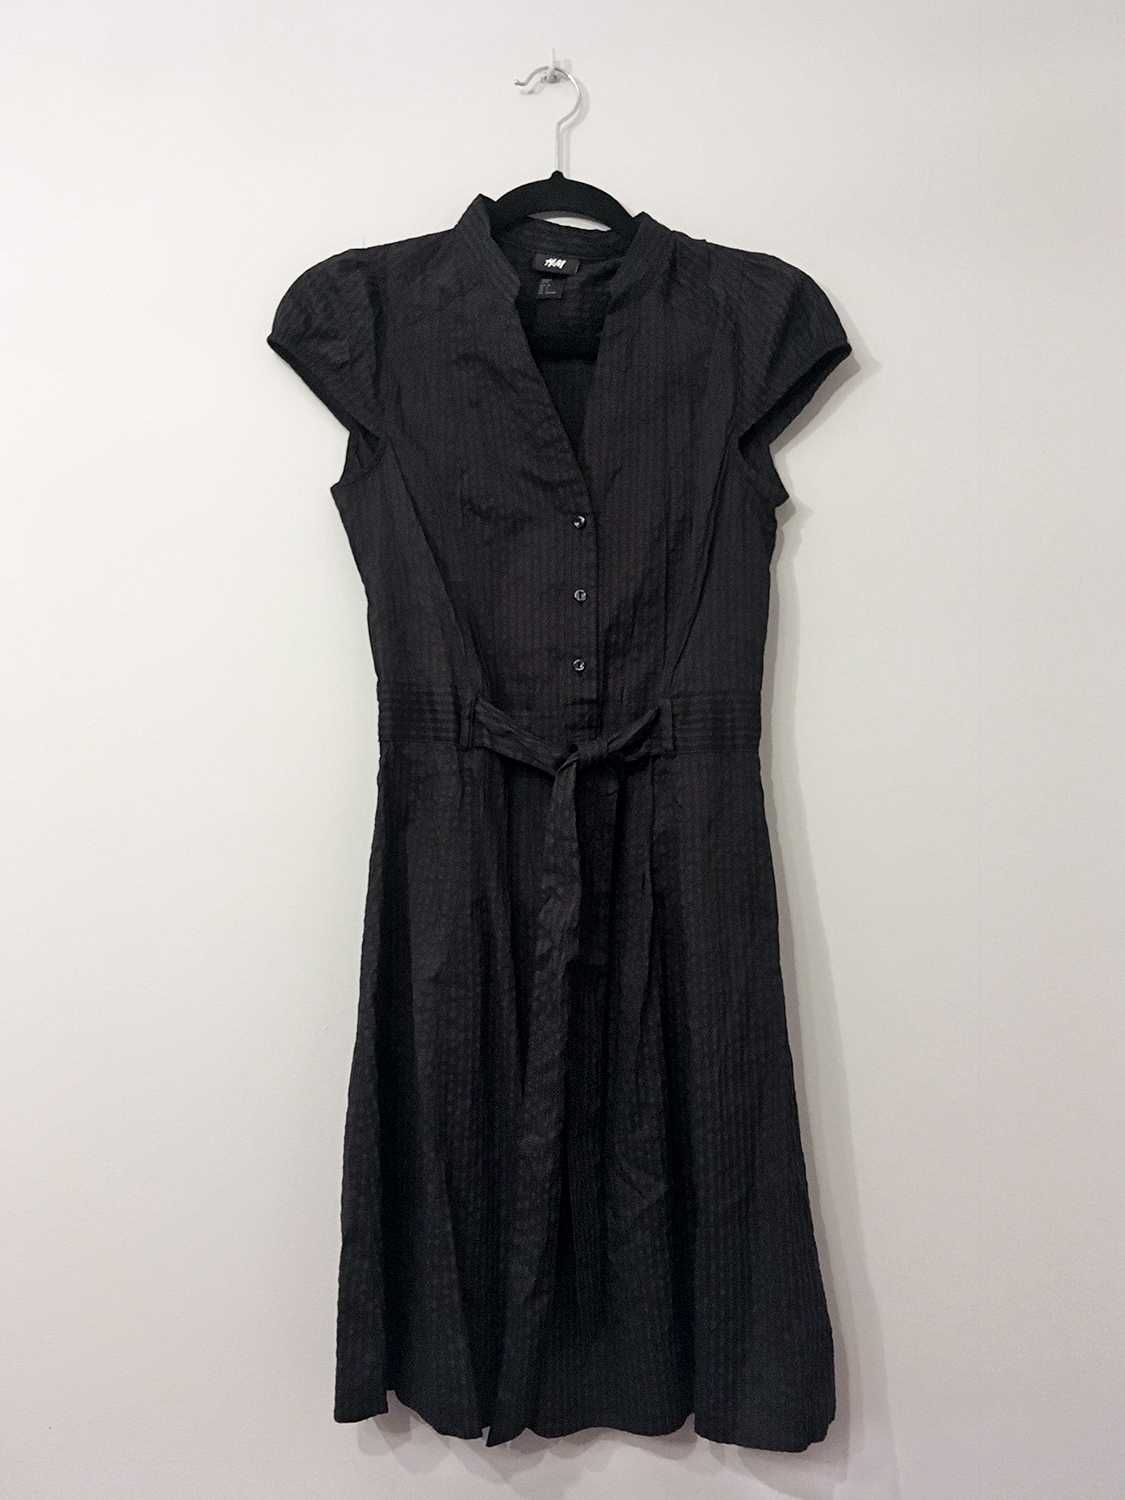 Czarna sukienka, guziczki, stójka, kokarda, H&M